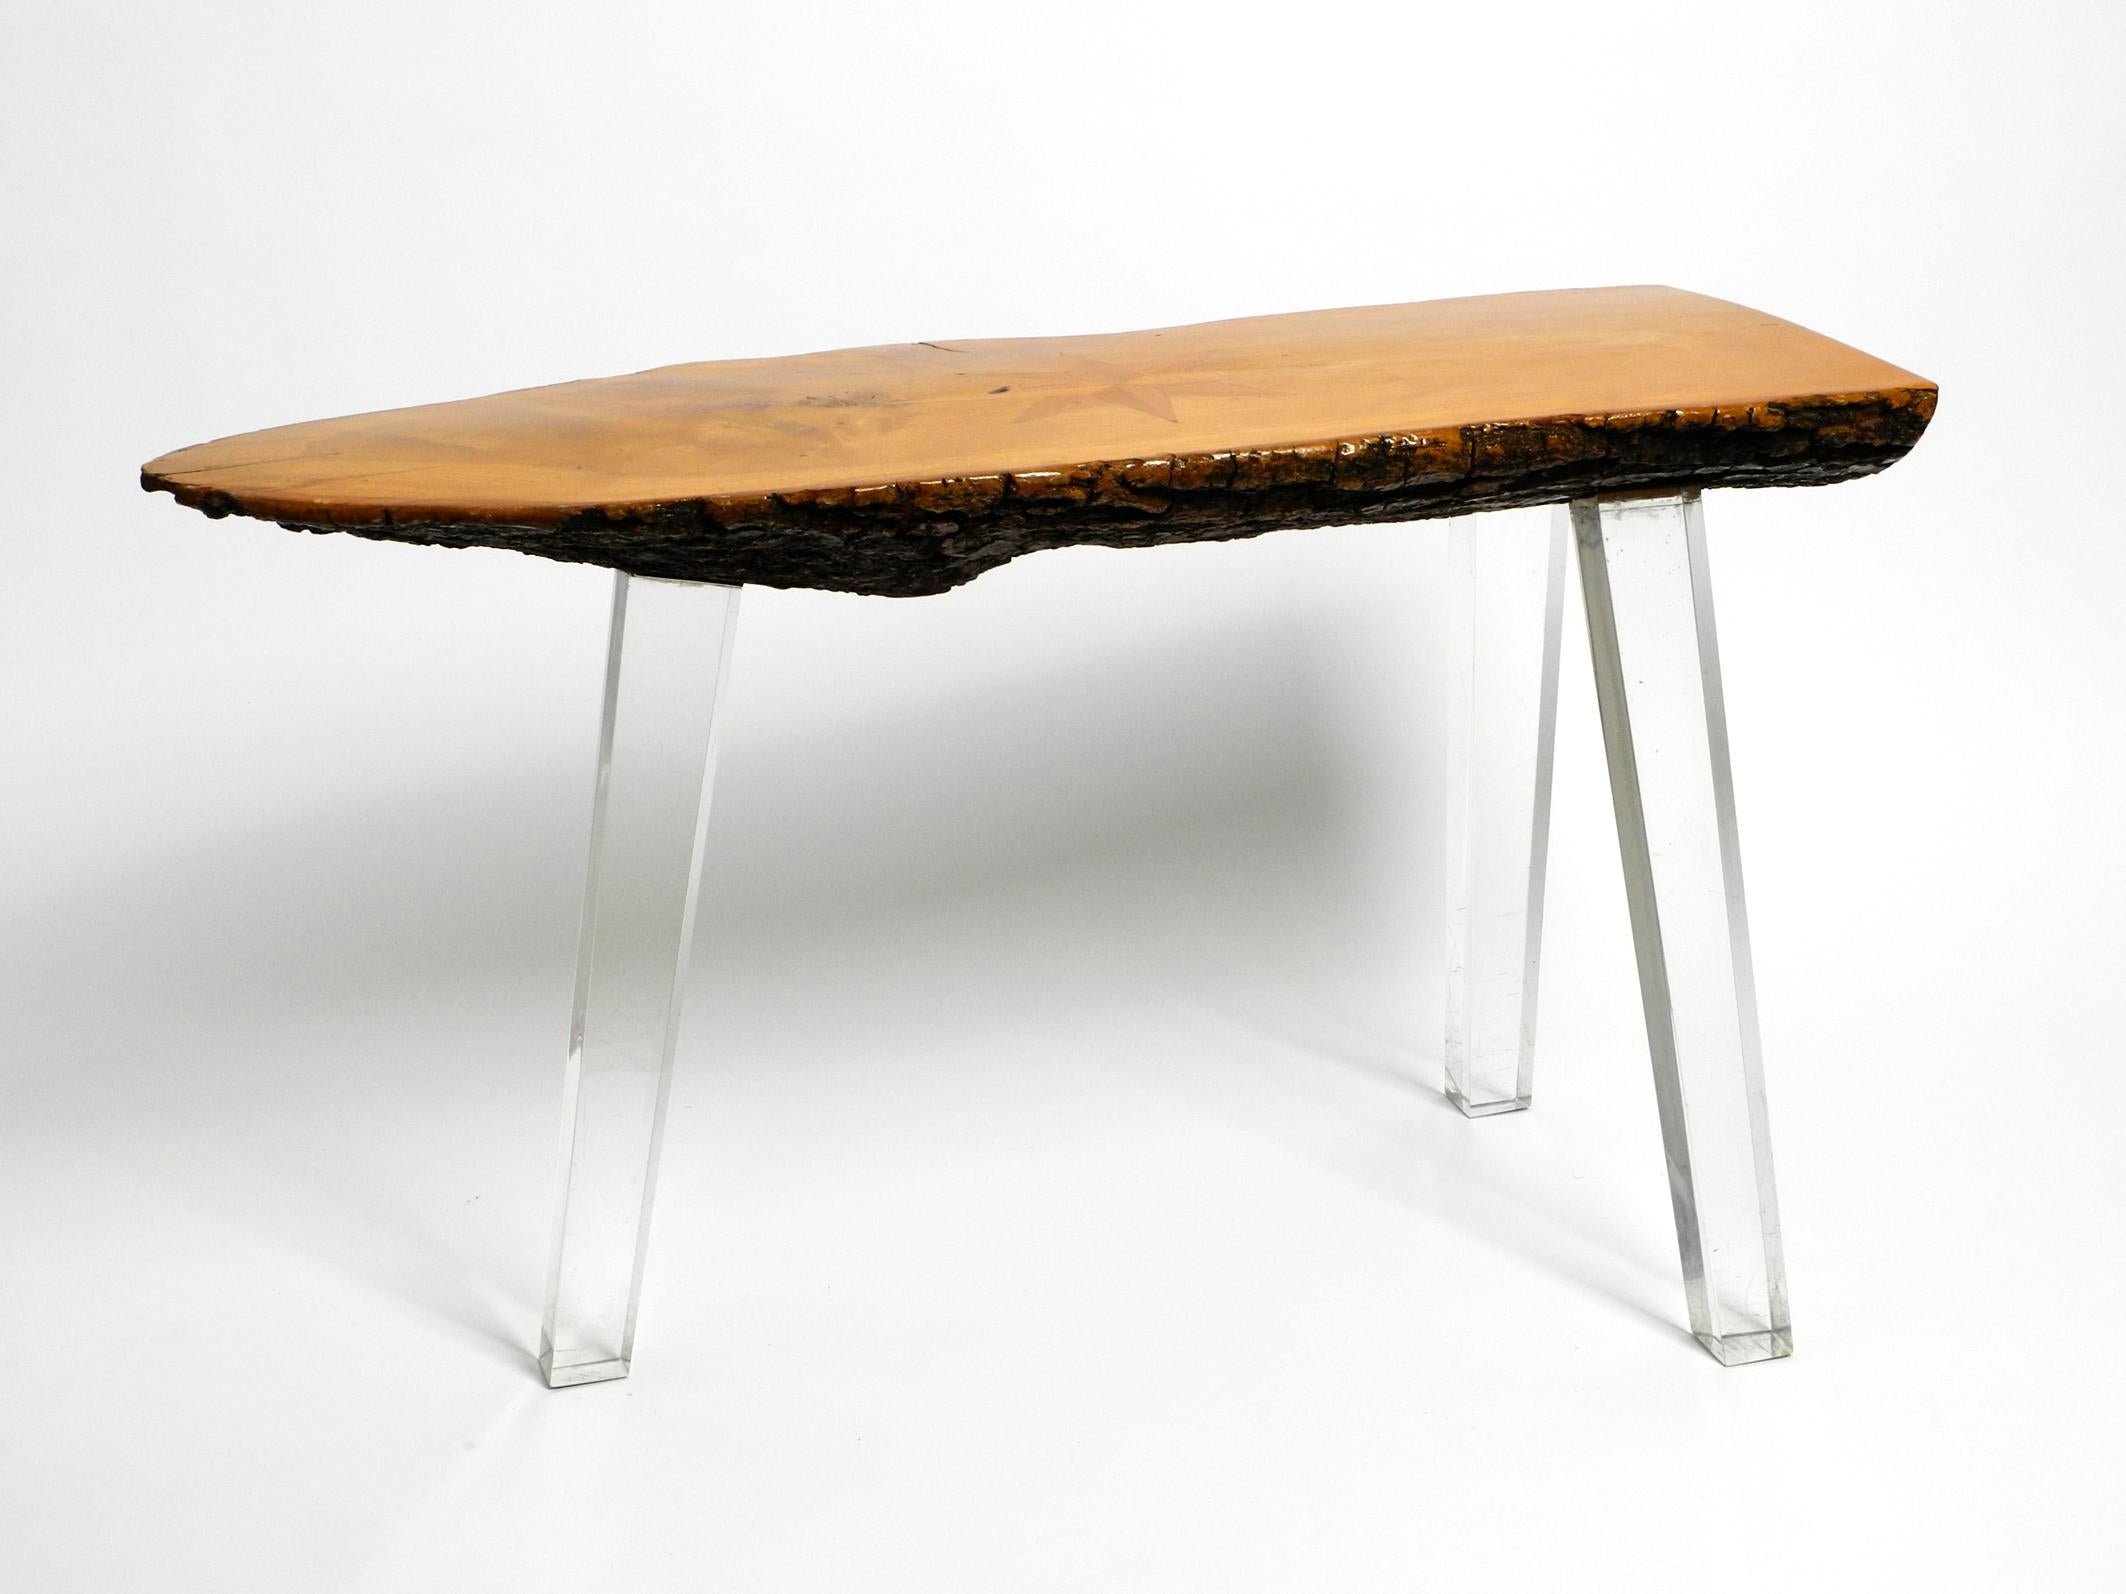 Magnifique table basse d'appoint au design Régence des années 70, fabriquée à partir d'une épaisse tranche d'arbre dont le dessous est recouvert d'écorce.
Entièrement recouvert de vernis transparent. 
Avec une belle incrustation en forme d'étoile